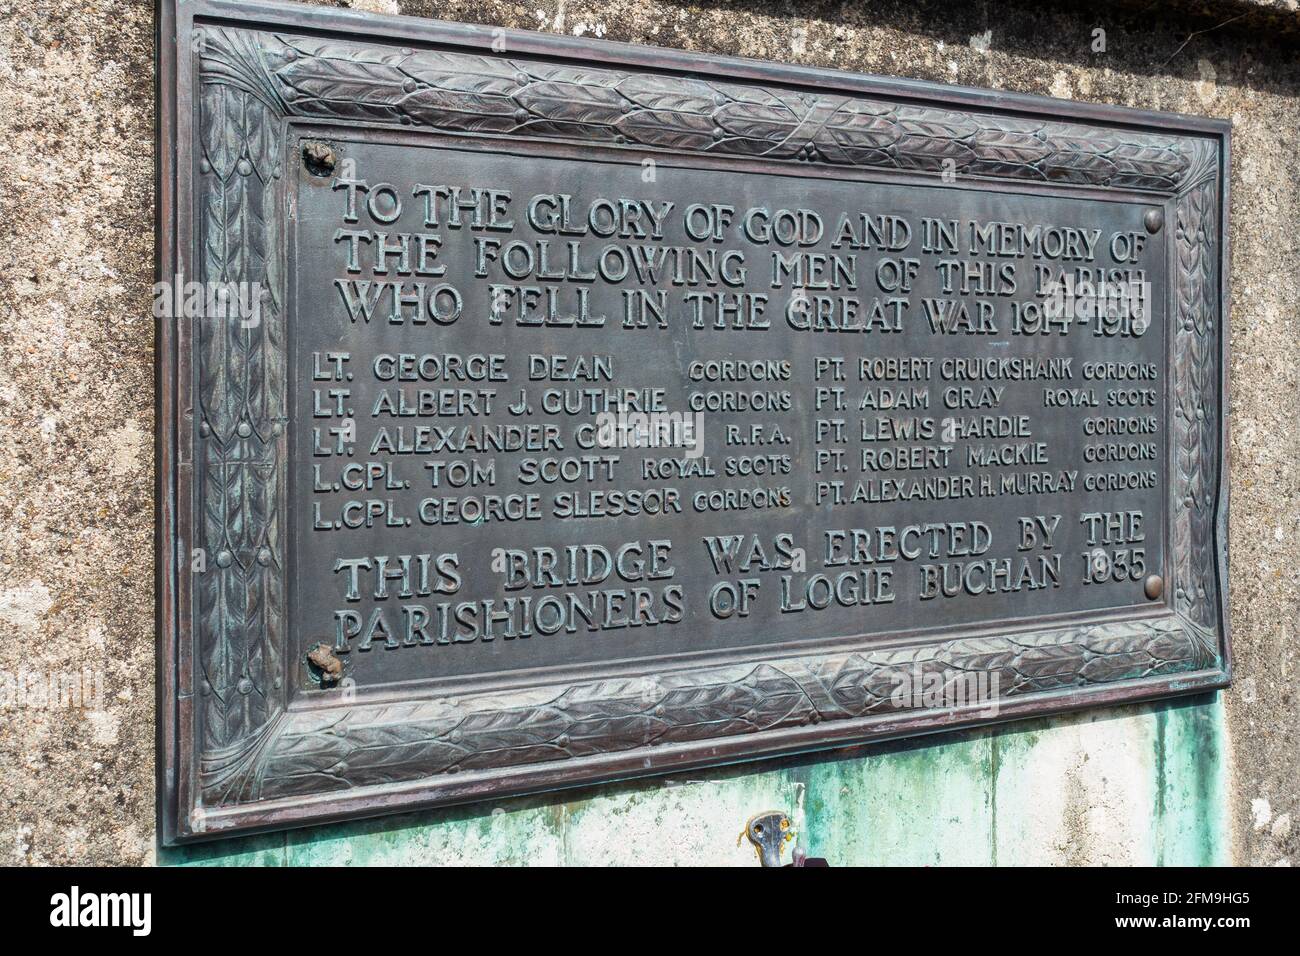 La plaque sur le pont Logie Buchan War Memorial Bridge au-dessus de la rivière Ythan dans le petit hameau ou la paroisse de Logie Buchan, Aberdeenshire, Écosse, Royaume-Uni Banque D'Images